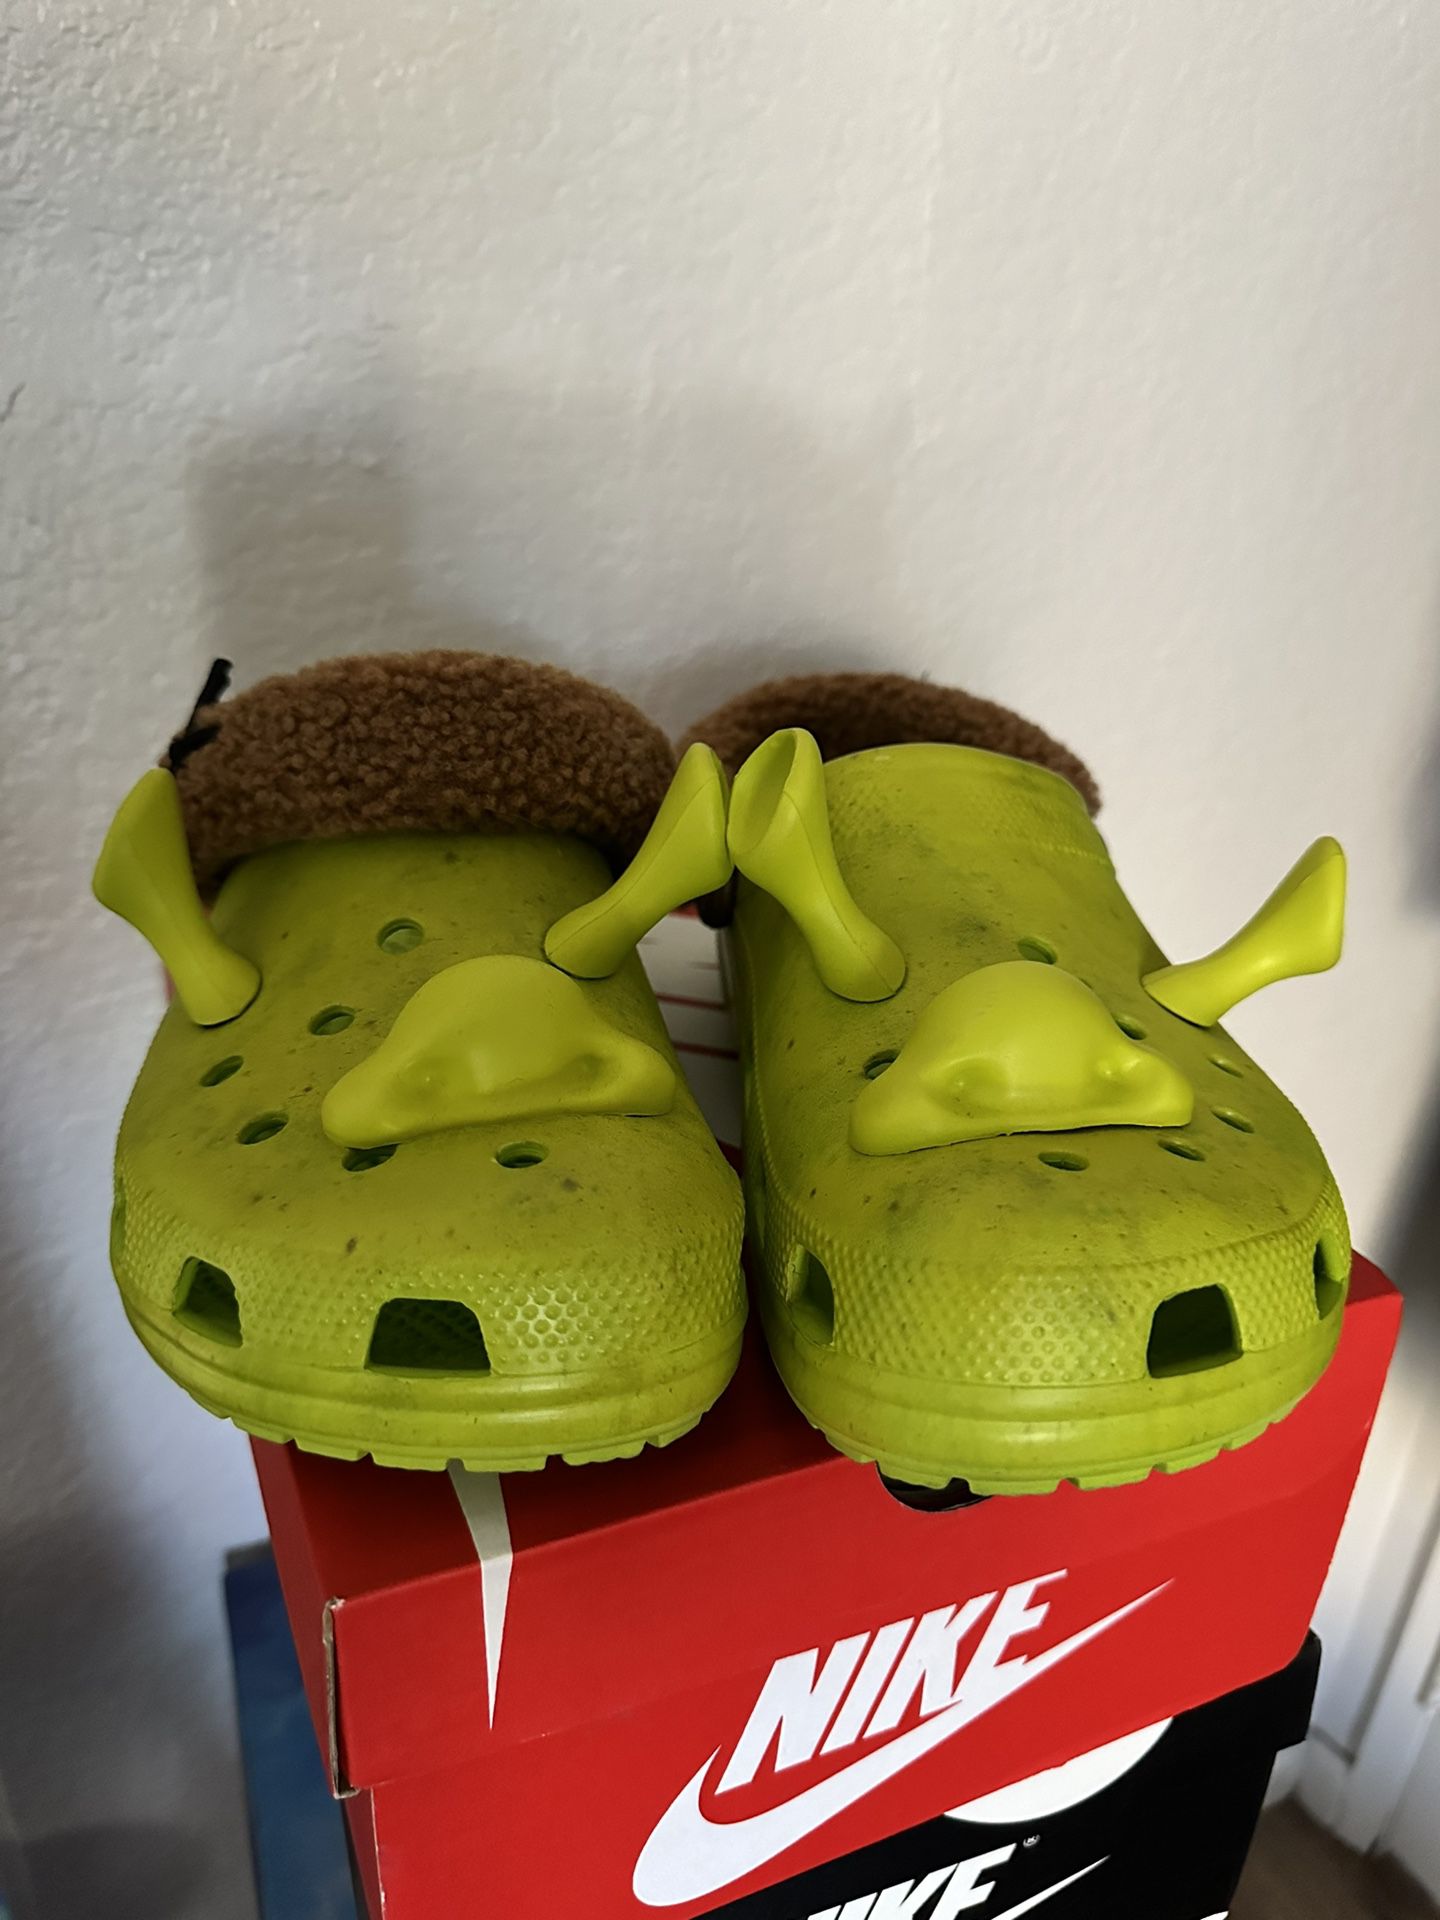 Shrek Crocs Size 11